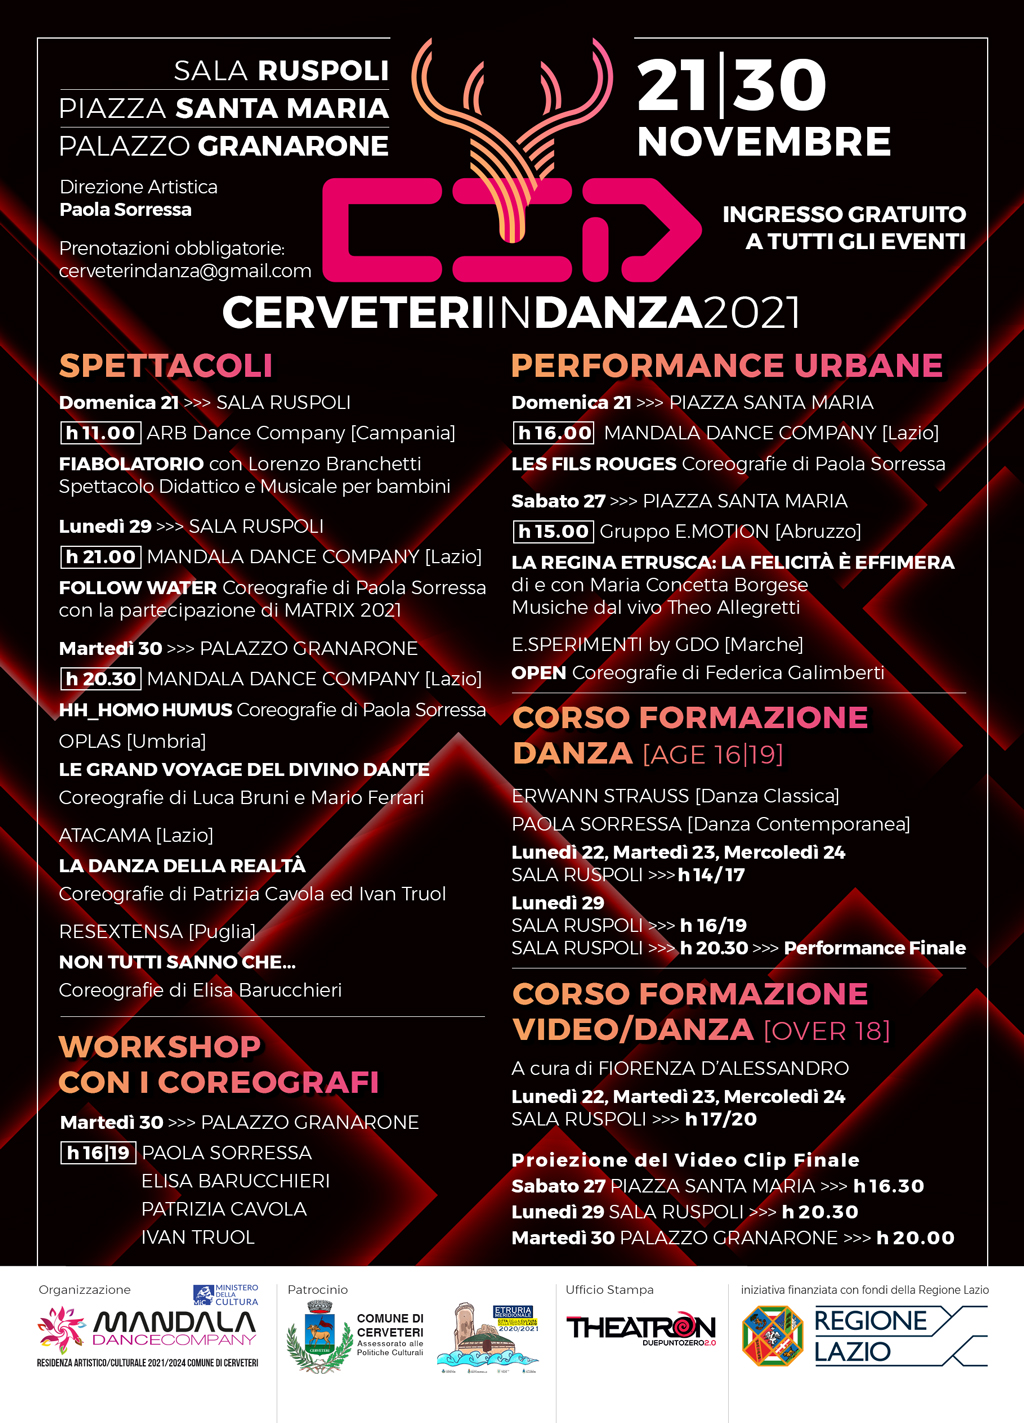 Danza Cerveteri in Danza 2021 Spettacoli Workshop Performance Urbane Corso Formazione Danza e Video Danza